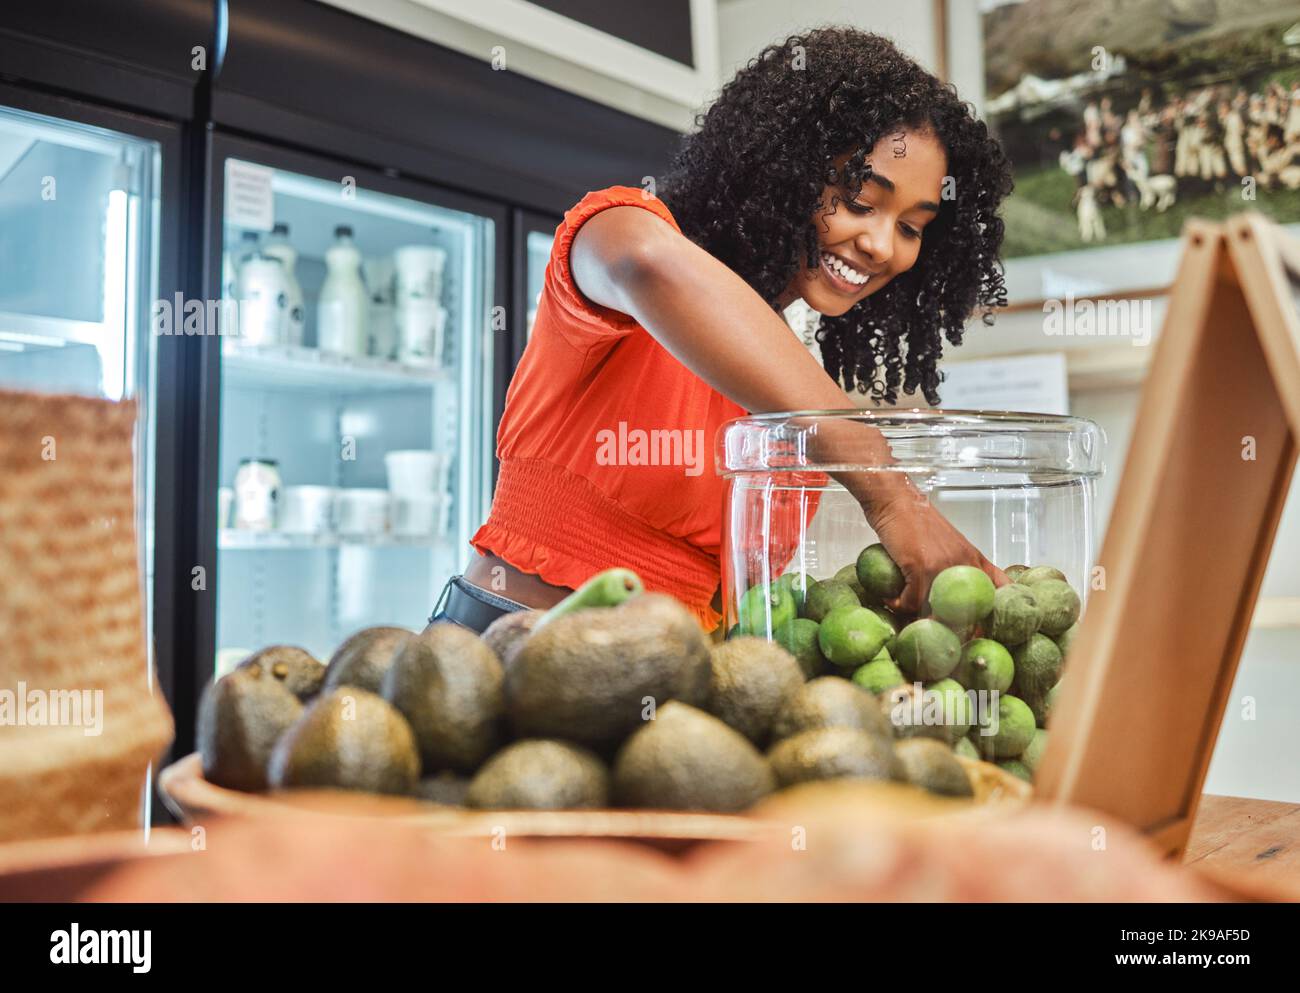 Einkaufen, Gemüse und Kunden im Lebensmittelgeschäft für gesunde Lebensmittel, vegane Auswahl und begeisterte Obstverkäufe oder Rabatt-Promotion. Einzelhandel, Handel und Stockfoto